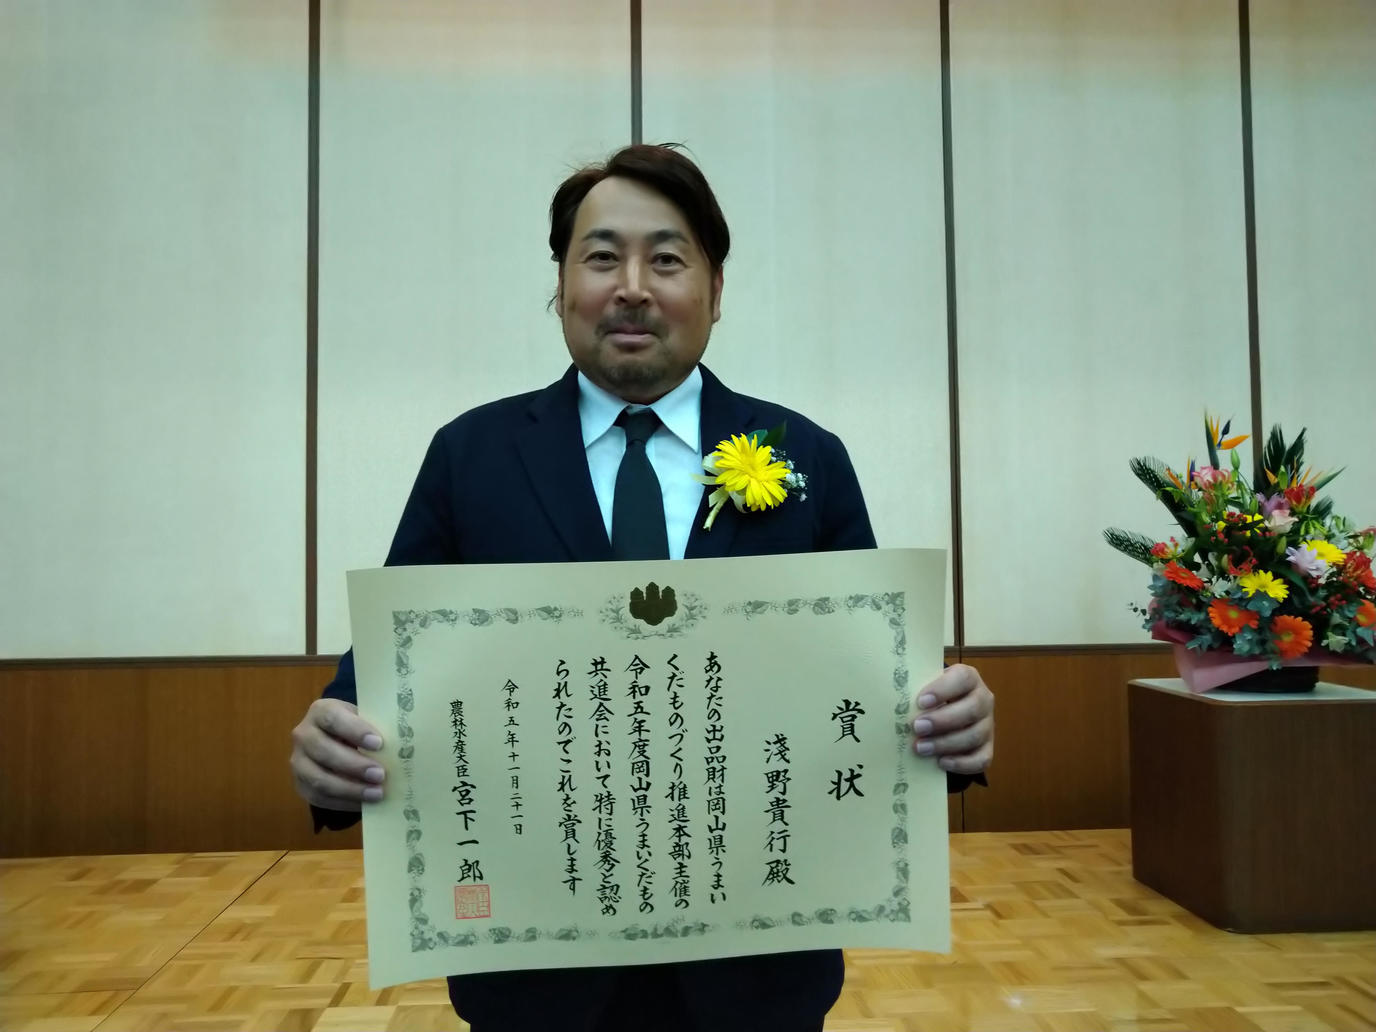 農林水産大臣賞を受賞した淺野貴行さんの内容を表示